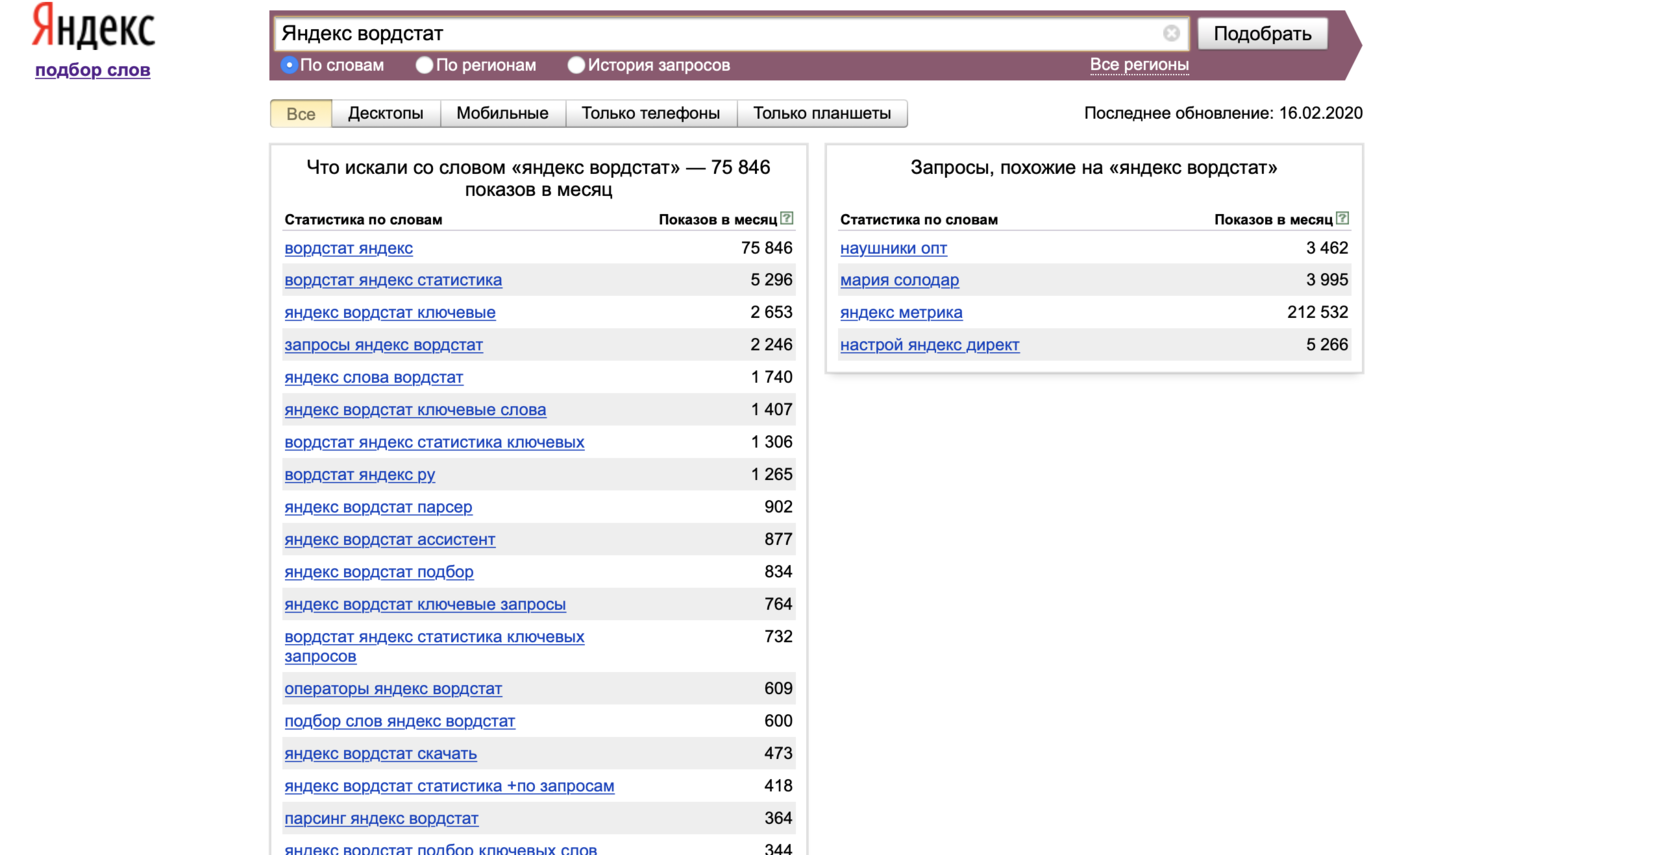 Парсер ключевых слов. Популярные запросы в Яндексе.